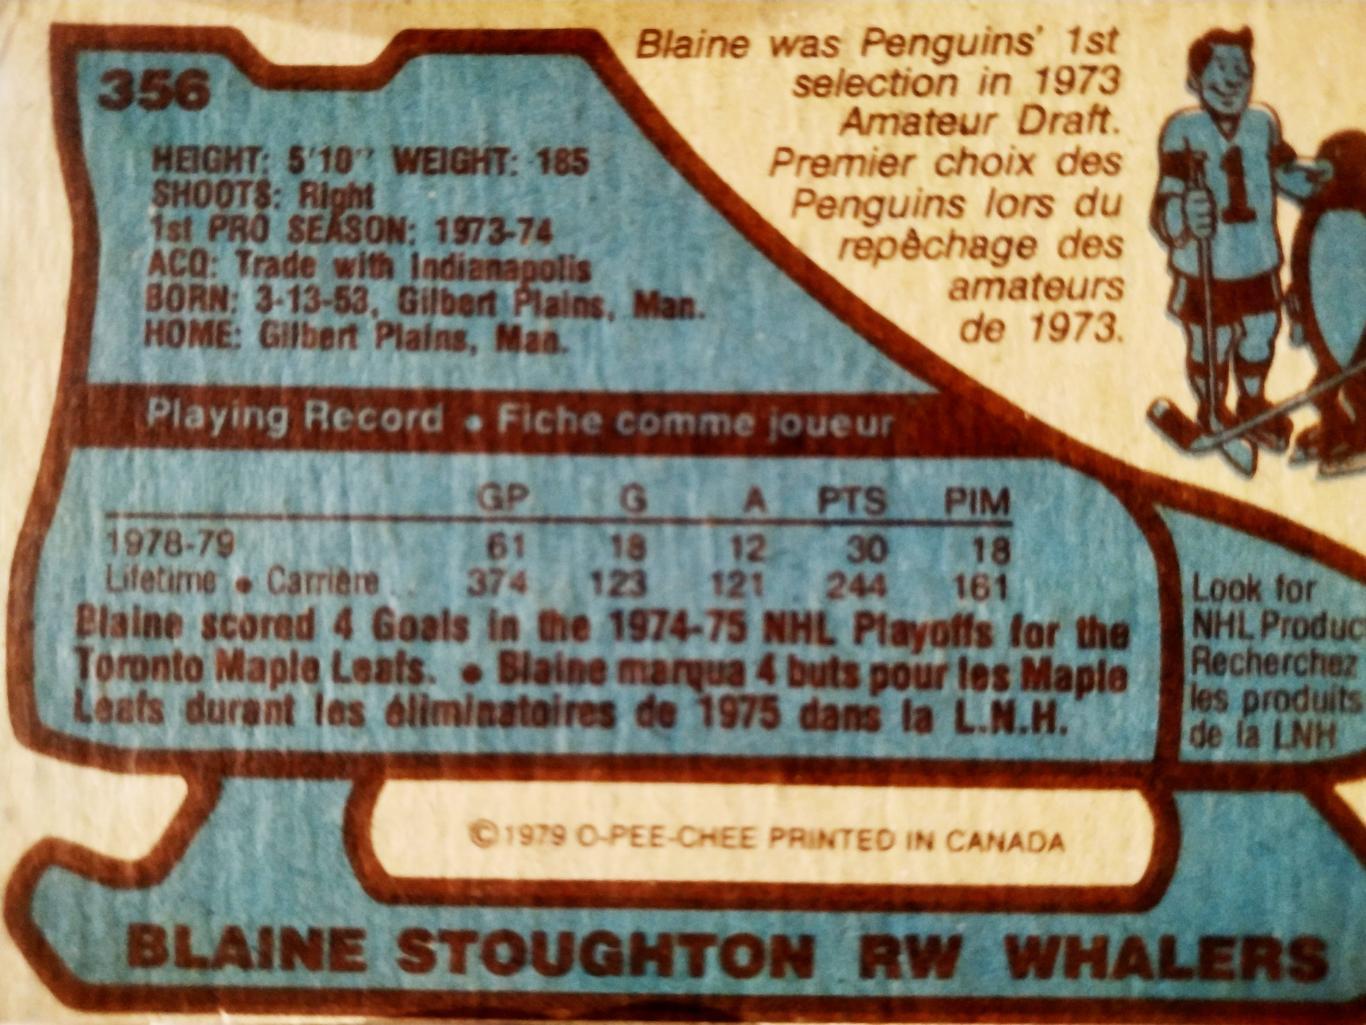 ХОККЕЙ КАРТОЧКА НХЛ O-PEE-CHEE 1979 NHL BLAINE STOUGHTON HARTFORD WHALERS #356 1